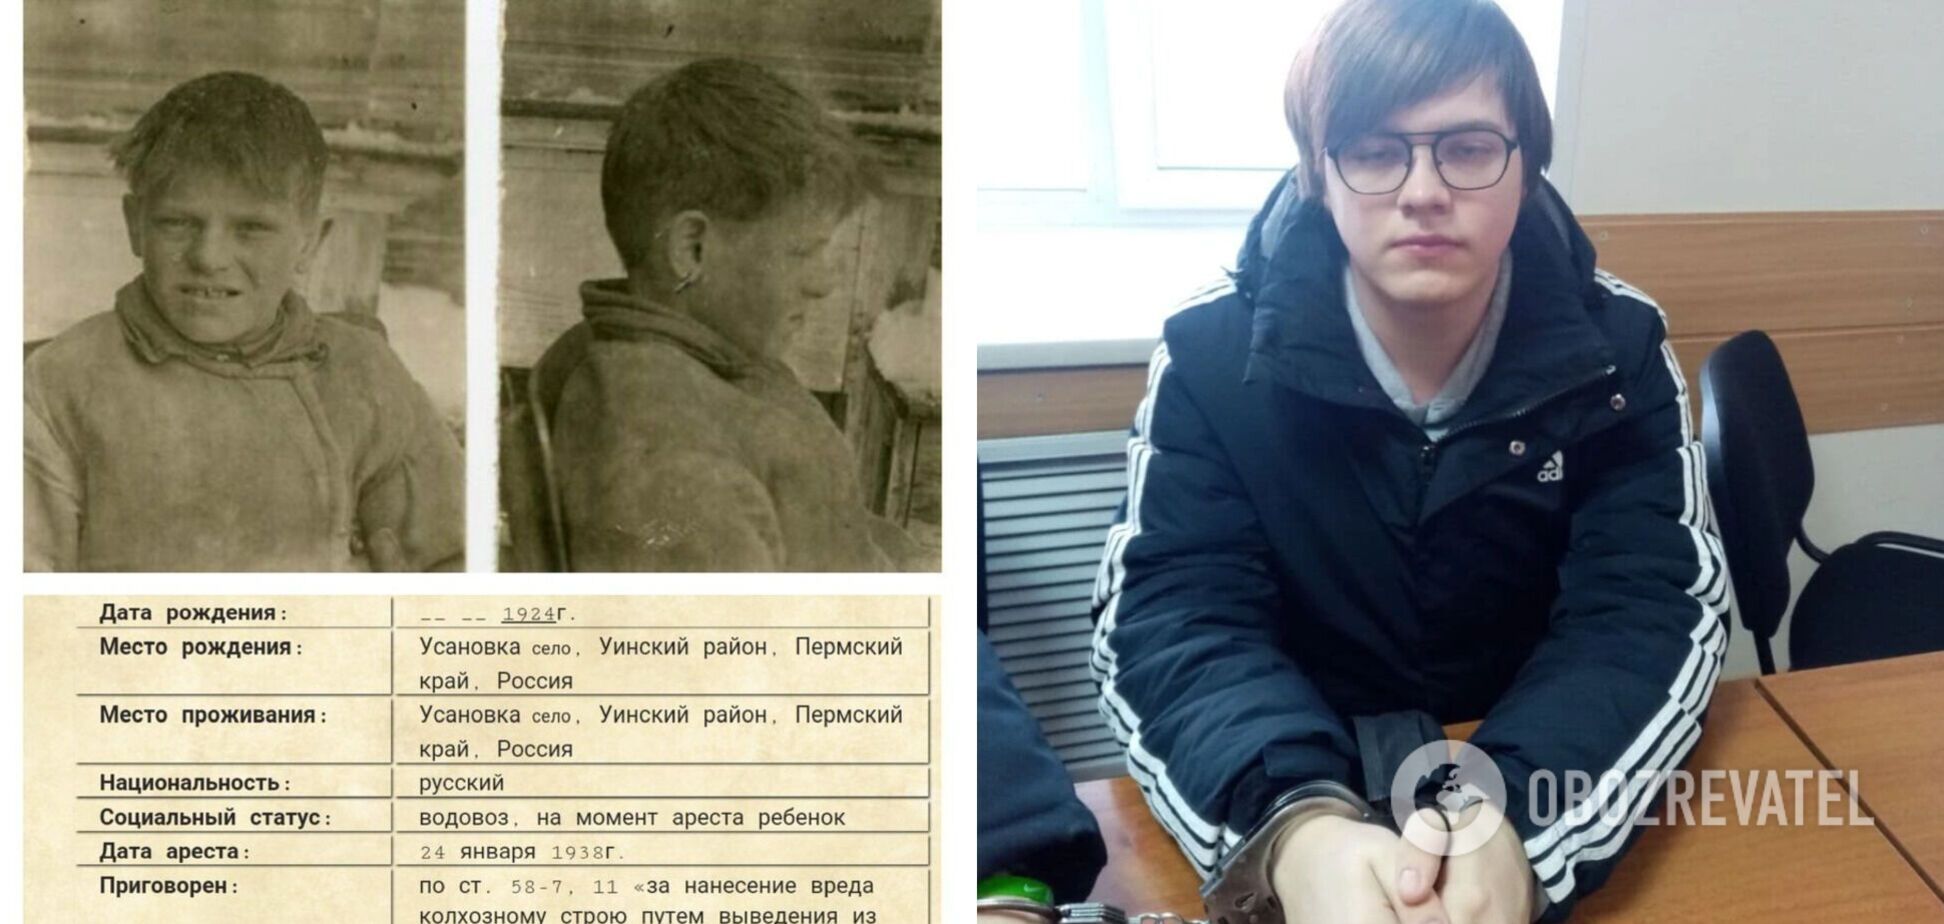 Уваров Микита, 16 років, 2022 р. Грав у 'Майнкрафт', у грі підривав будівлю ФСБ